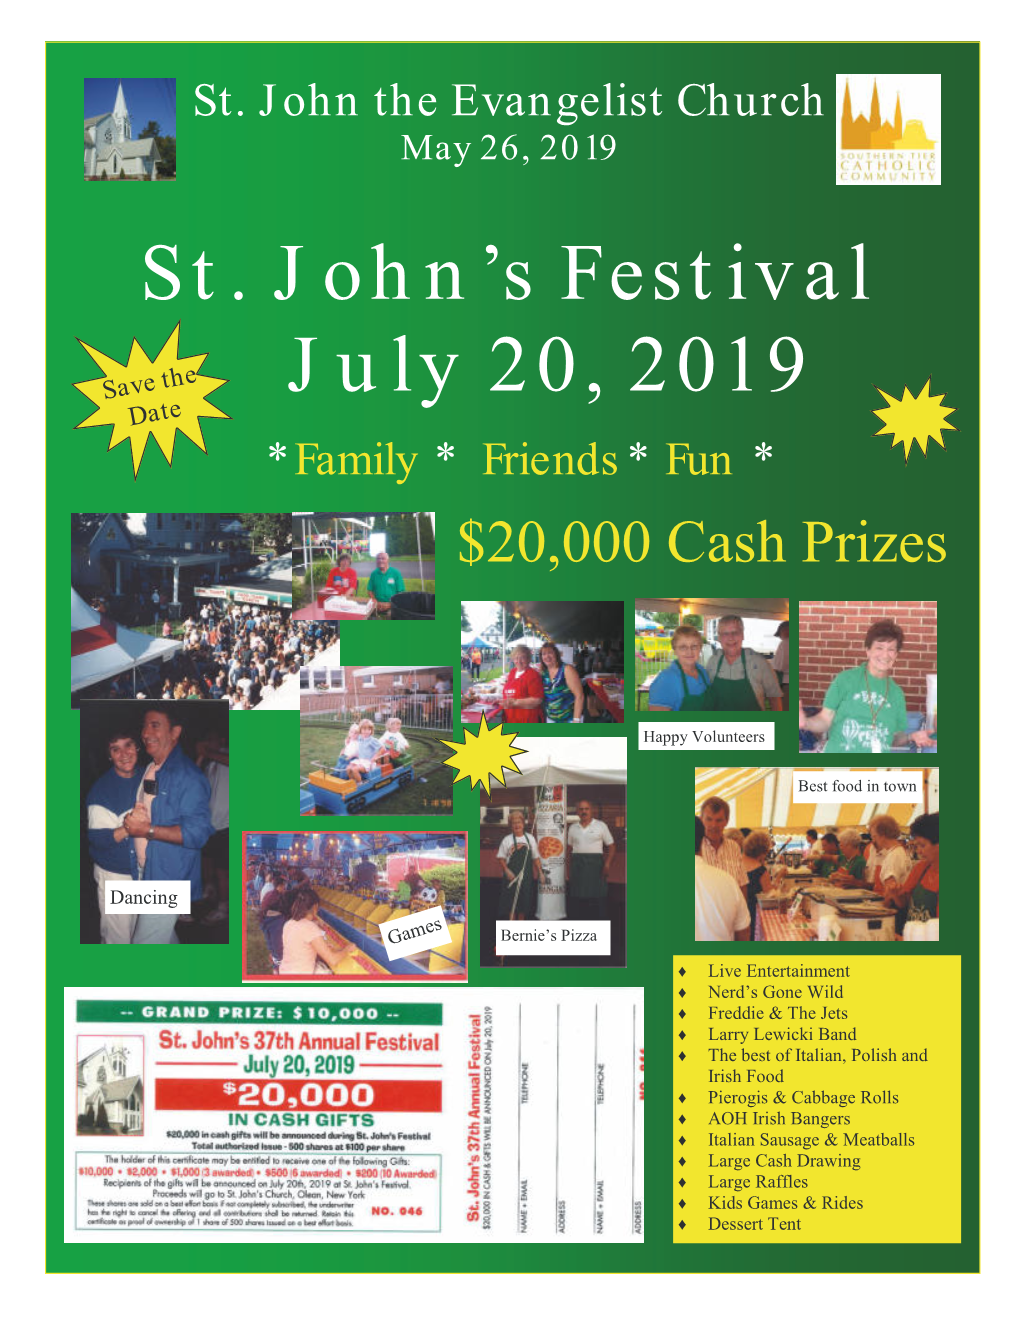 St. John's Festival July 20, 2019